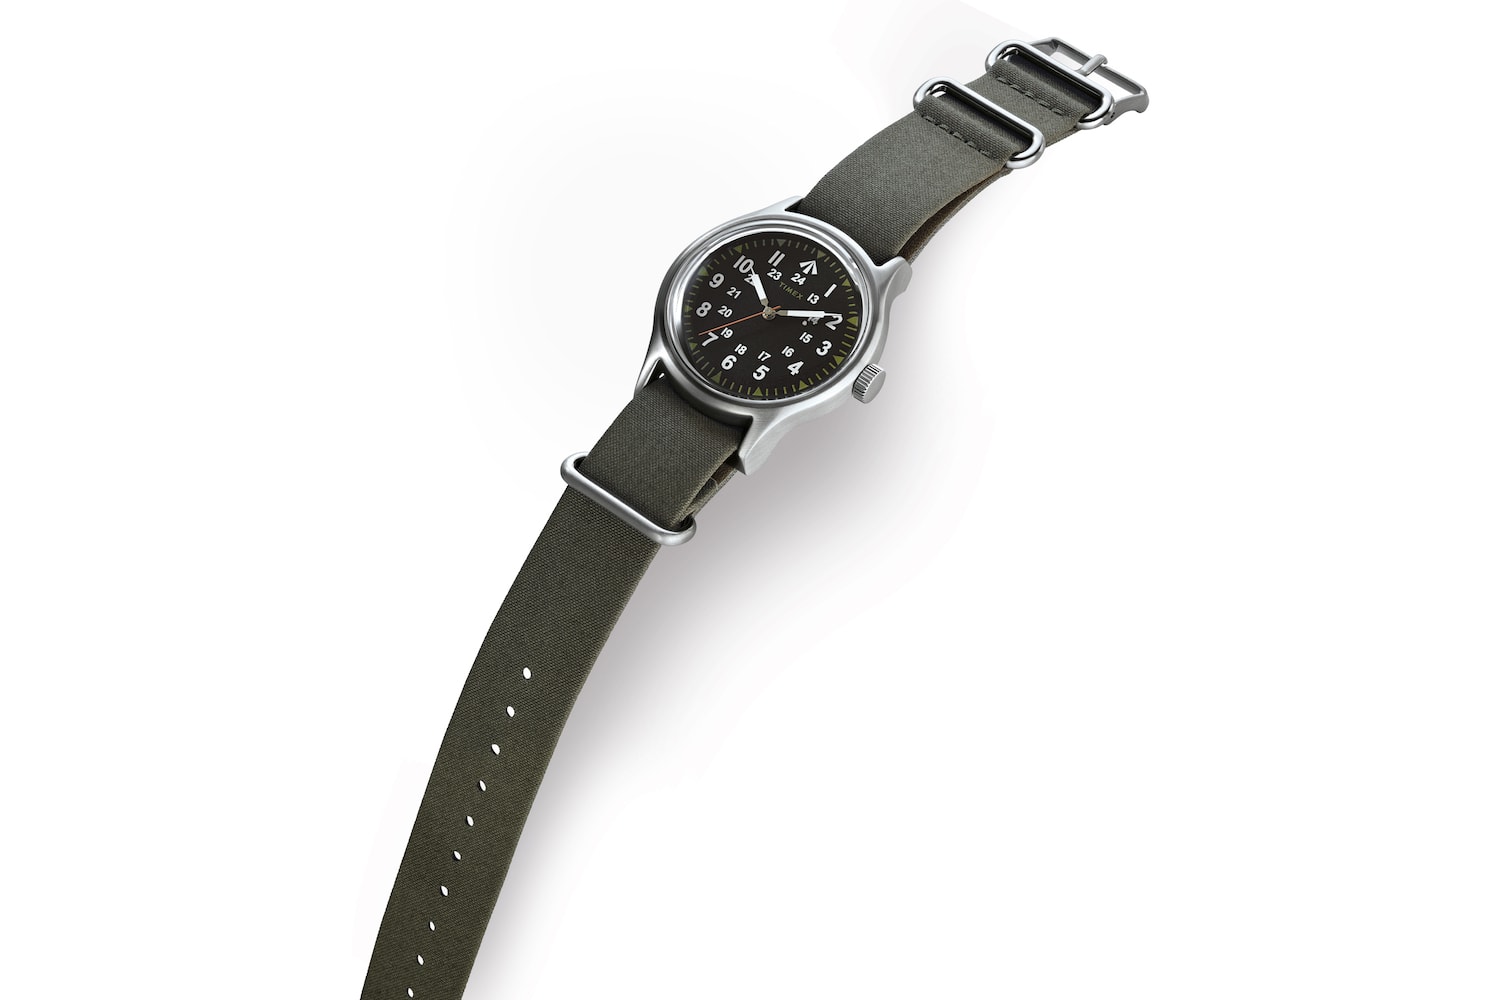 나이젤 카본 타이맥스 캠퍼 시계 컬렉션, Nigel Carbourn Timex Camper Watch Collection 2018